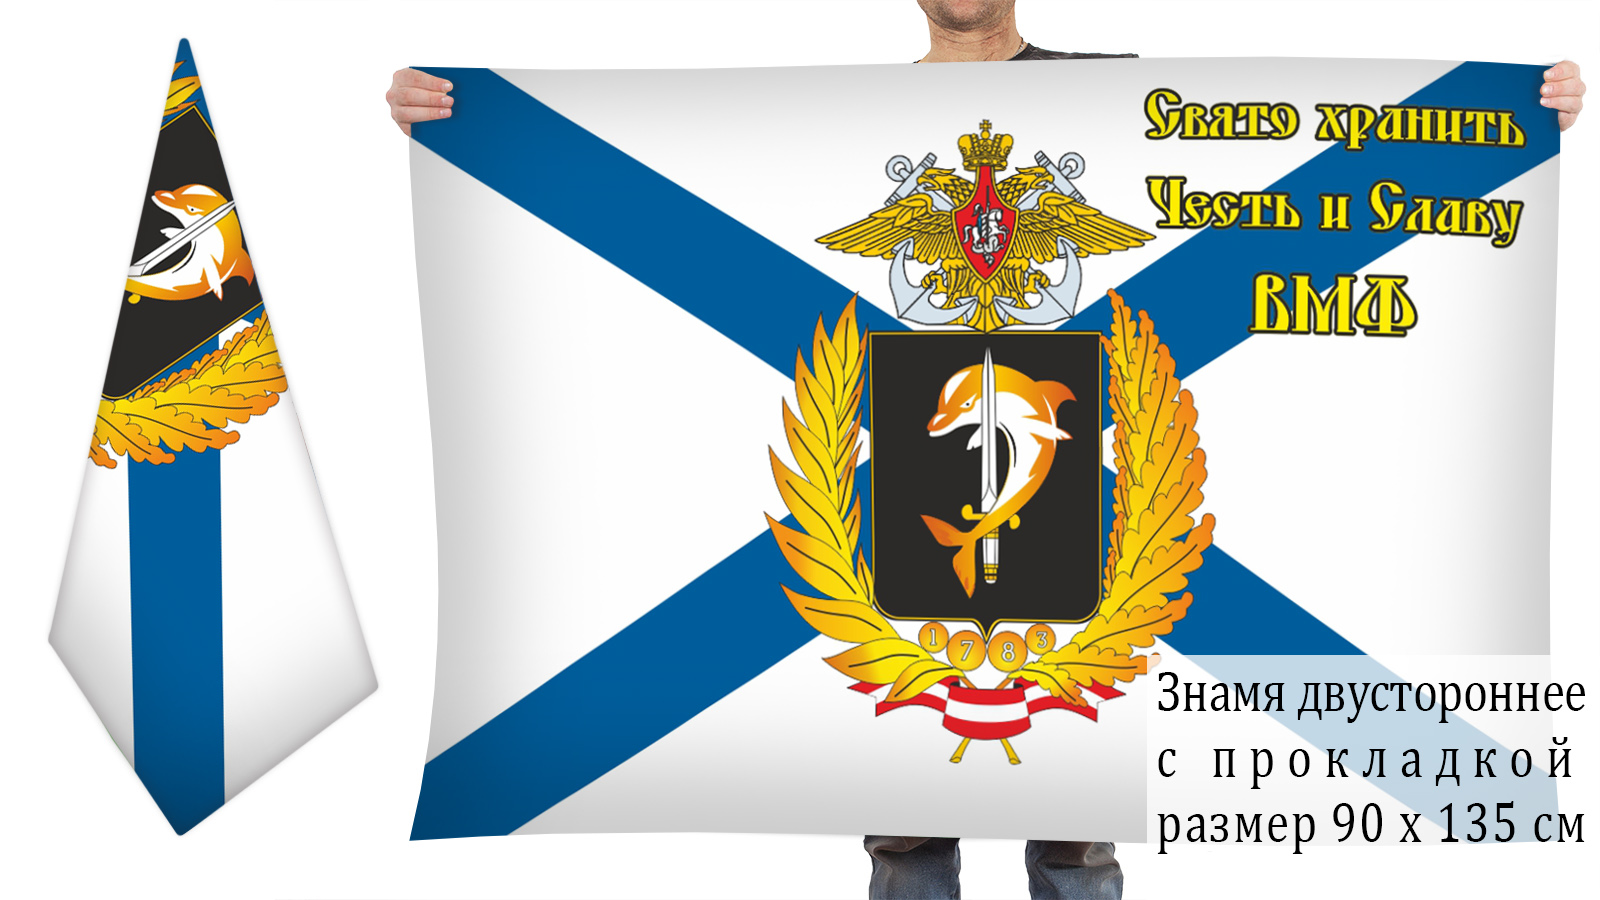 Двусторонний флаг Черноморского флота ВМФ с девизом